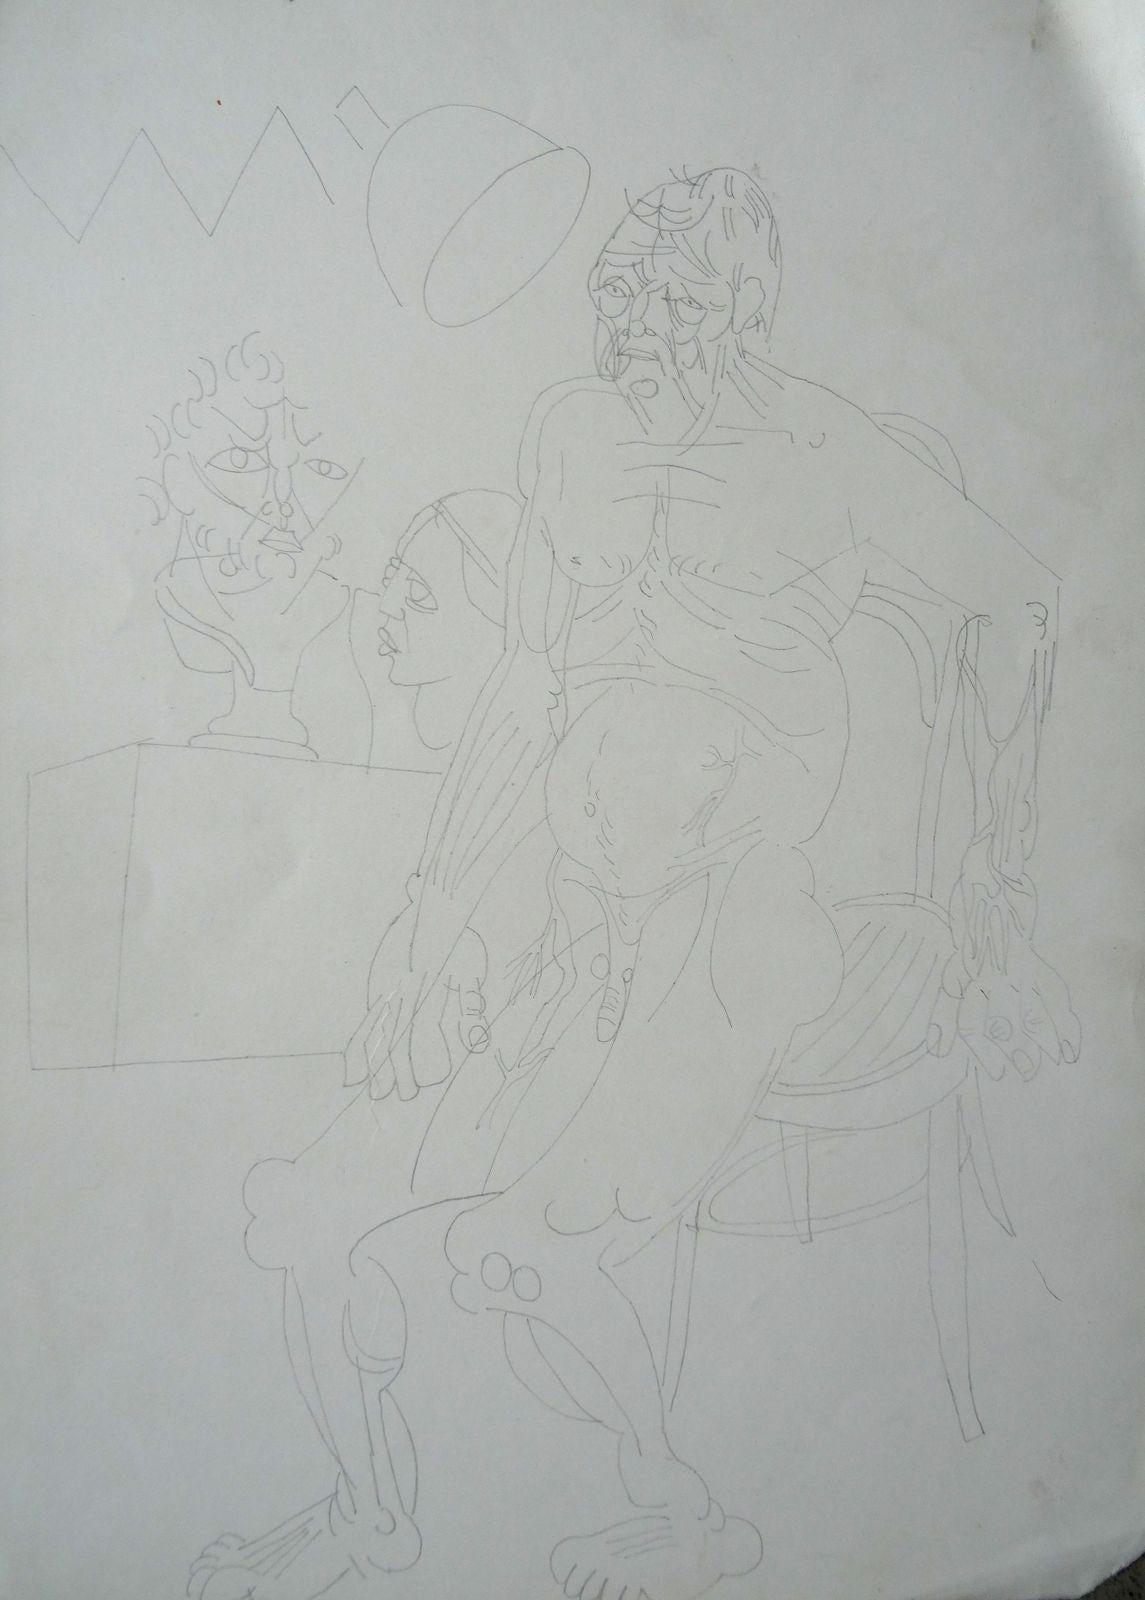 L'étude de l'homme. 1968. Papier, crayon, 35 x 25 cm - Art de Vladimir Glushenkov 